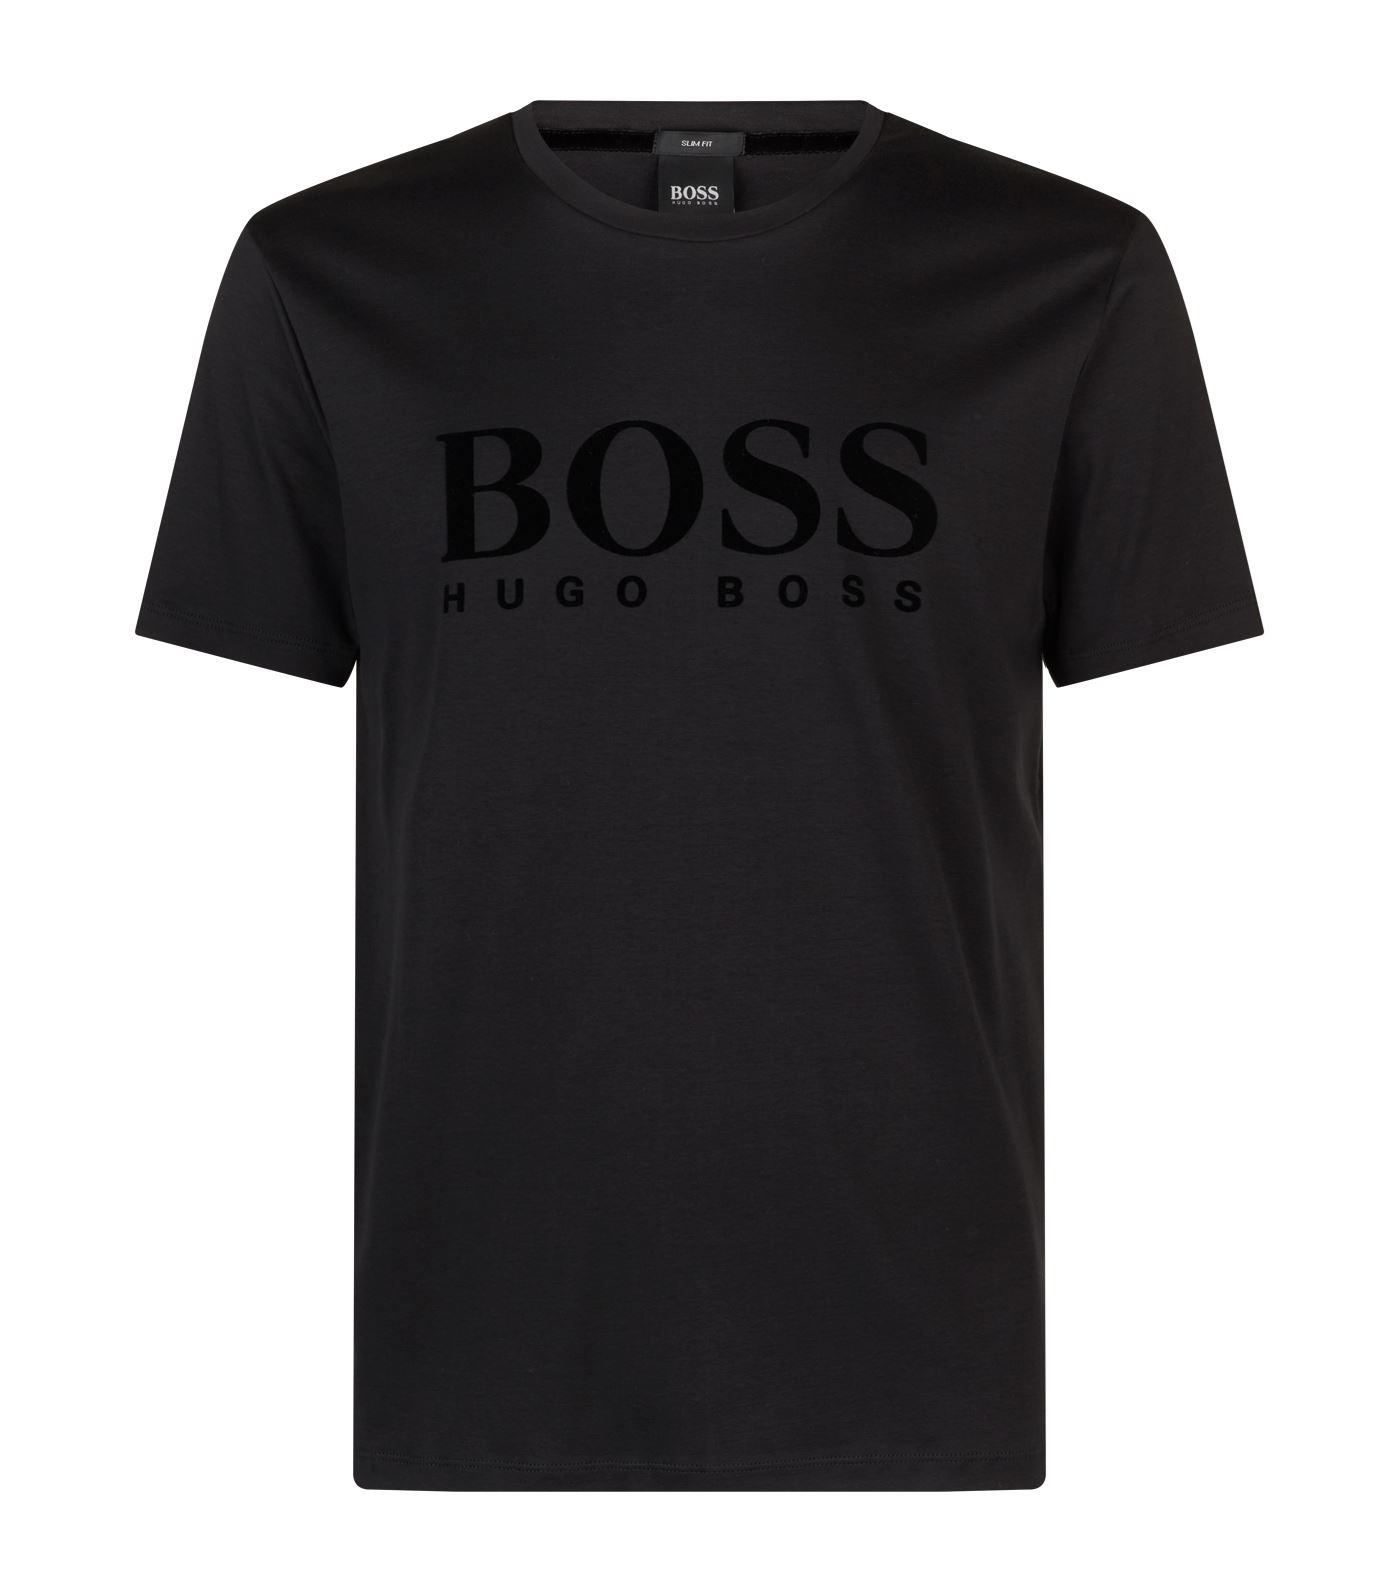 BOSS by HUGO BOSS Velvet Logo T-shirt in Black for Men | Lyst